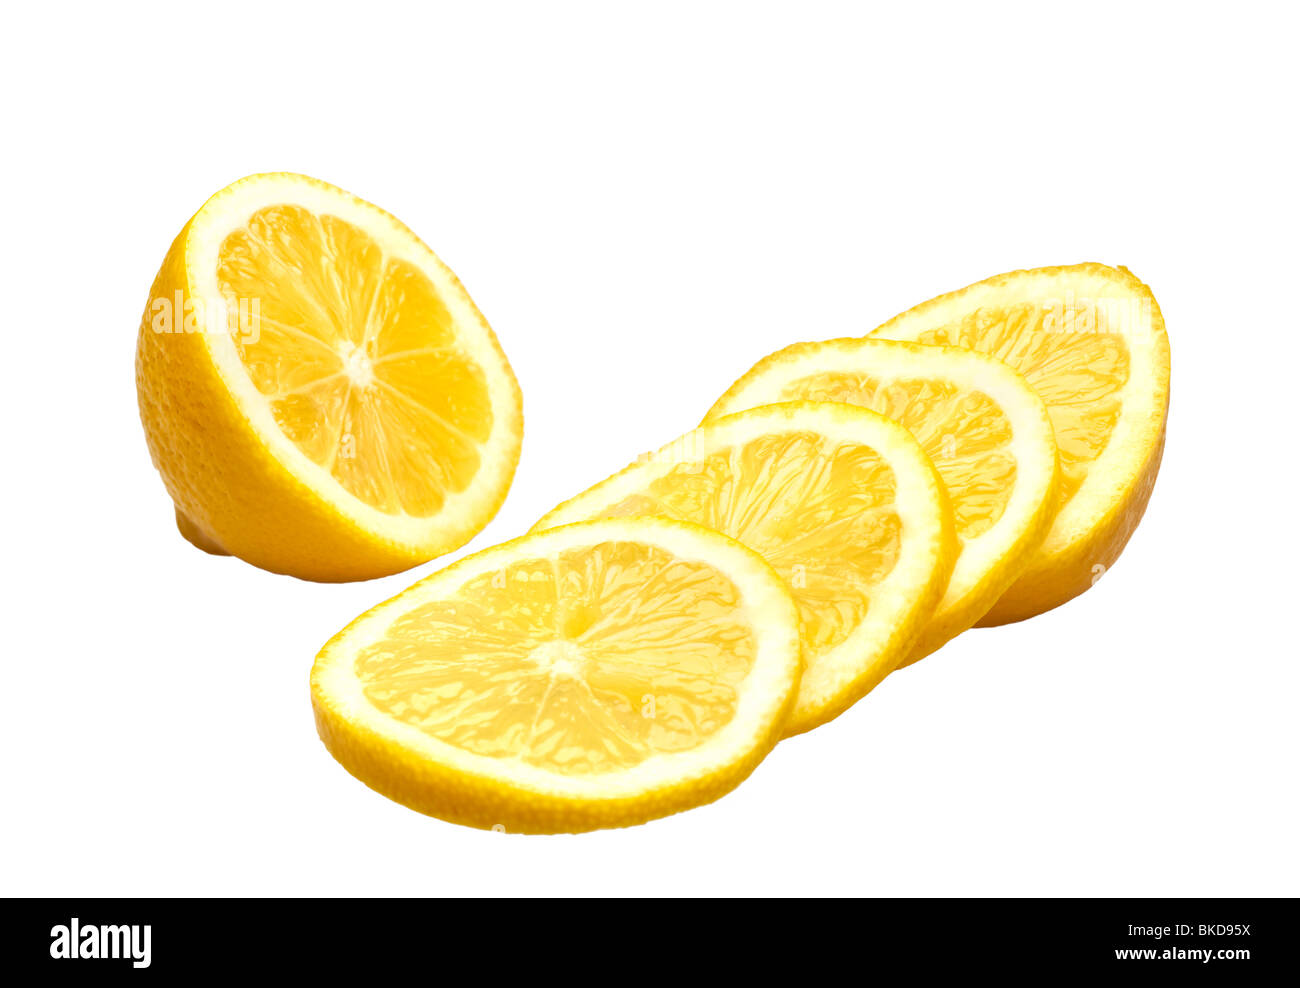 Los limones enteras y cortadas en blanco Foto de stock